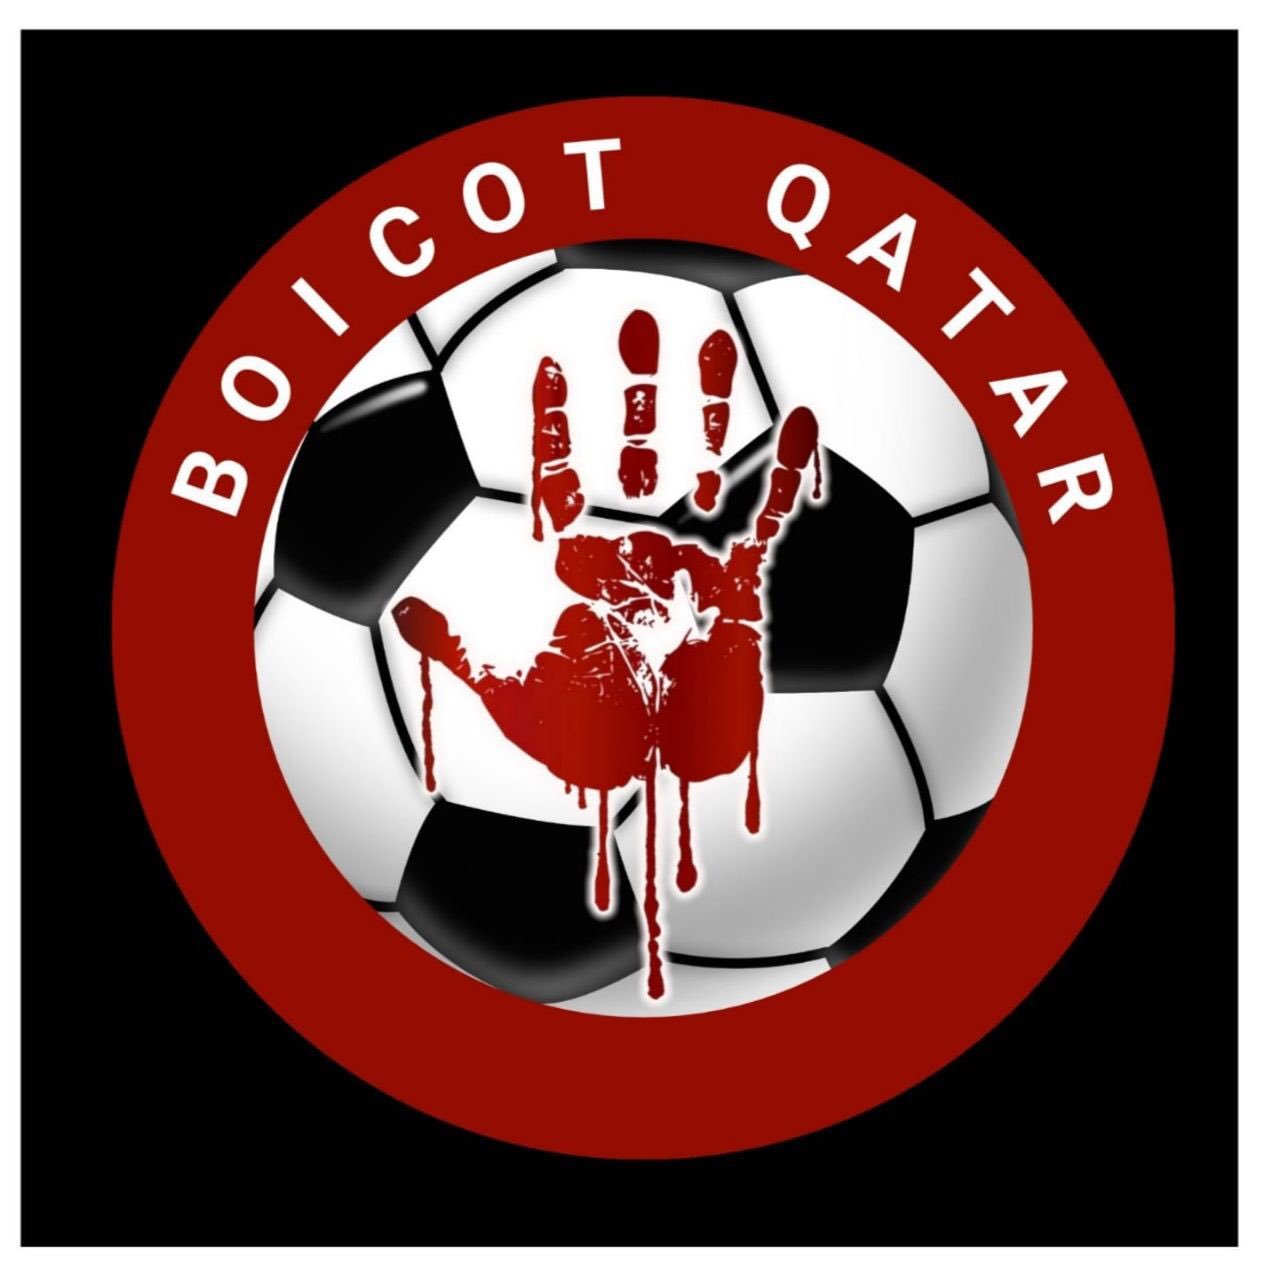 Boicot Qatar!